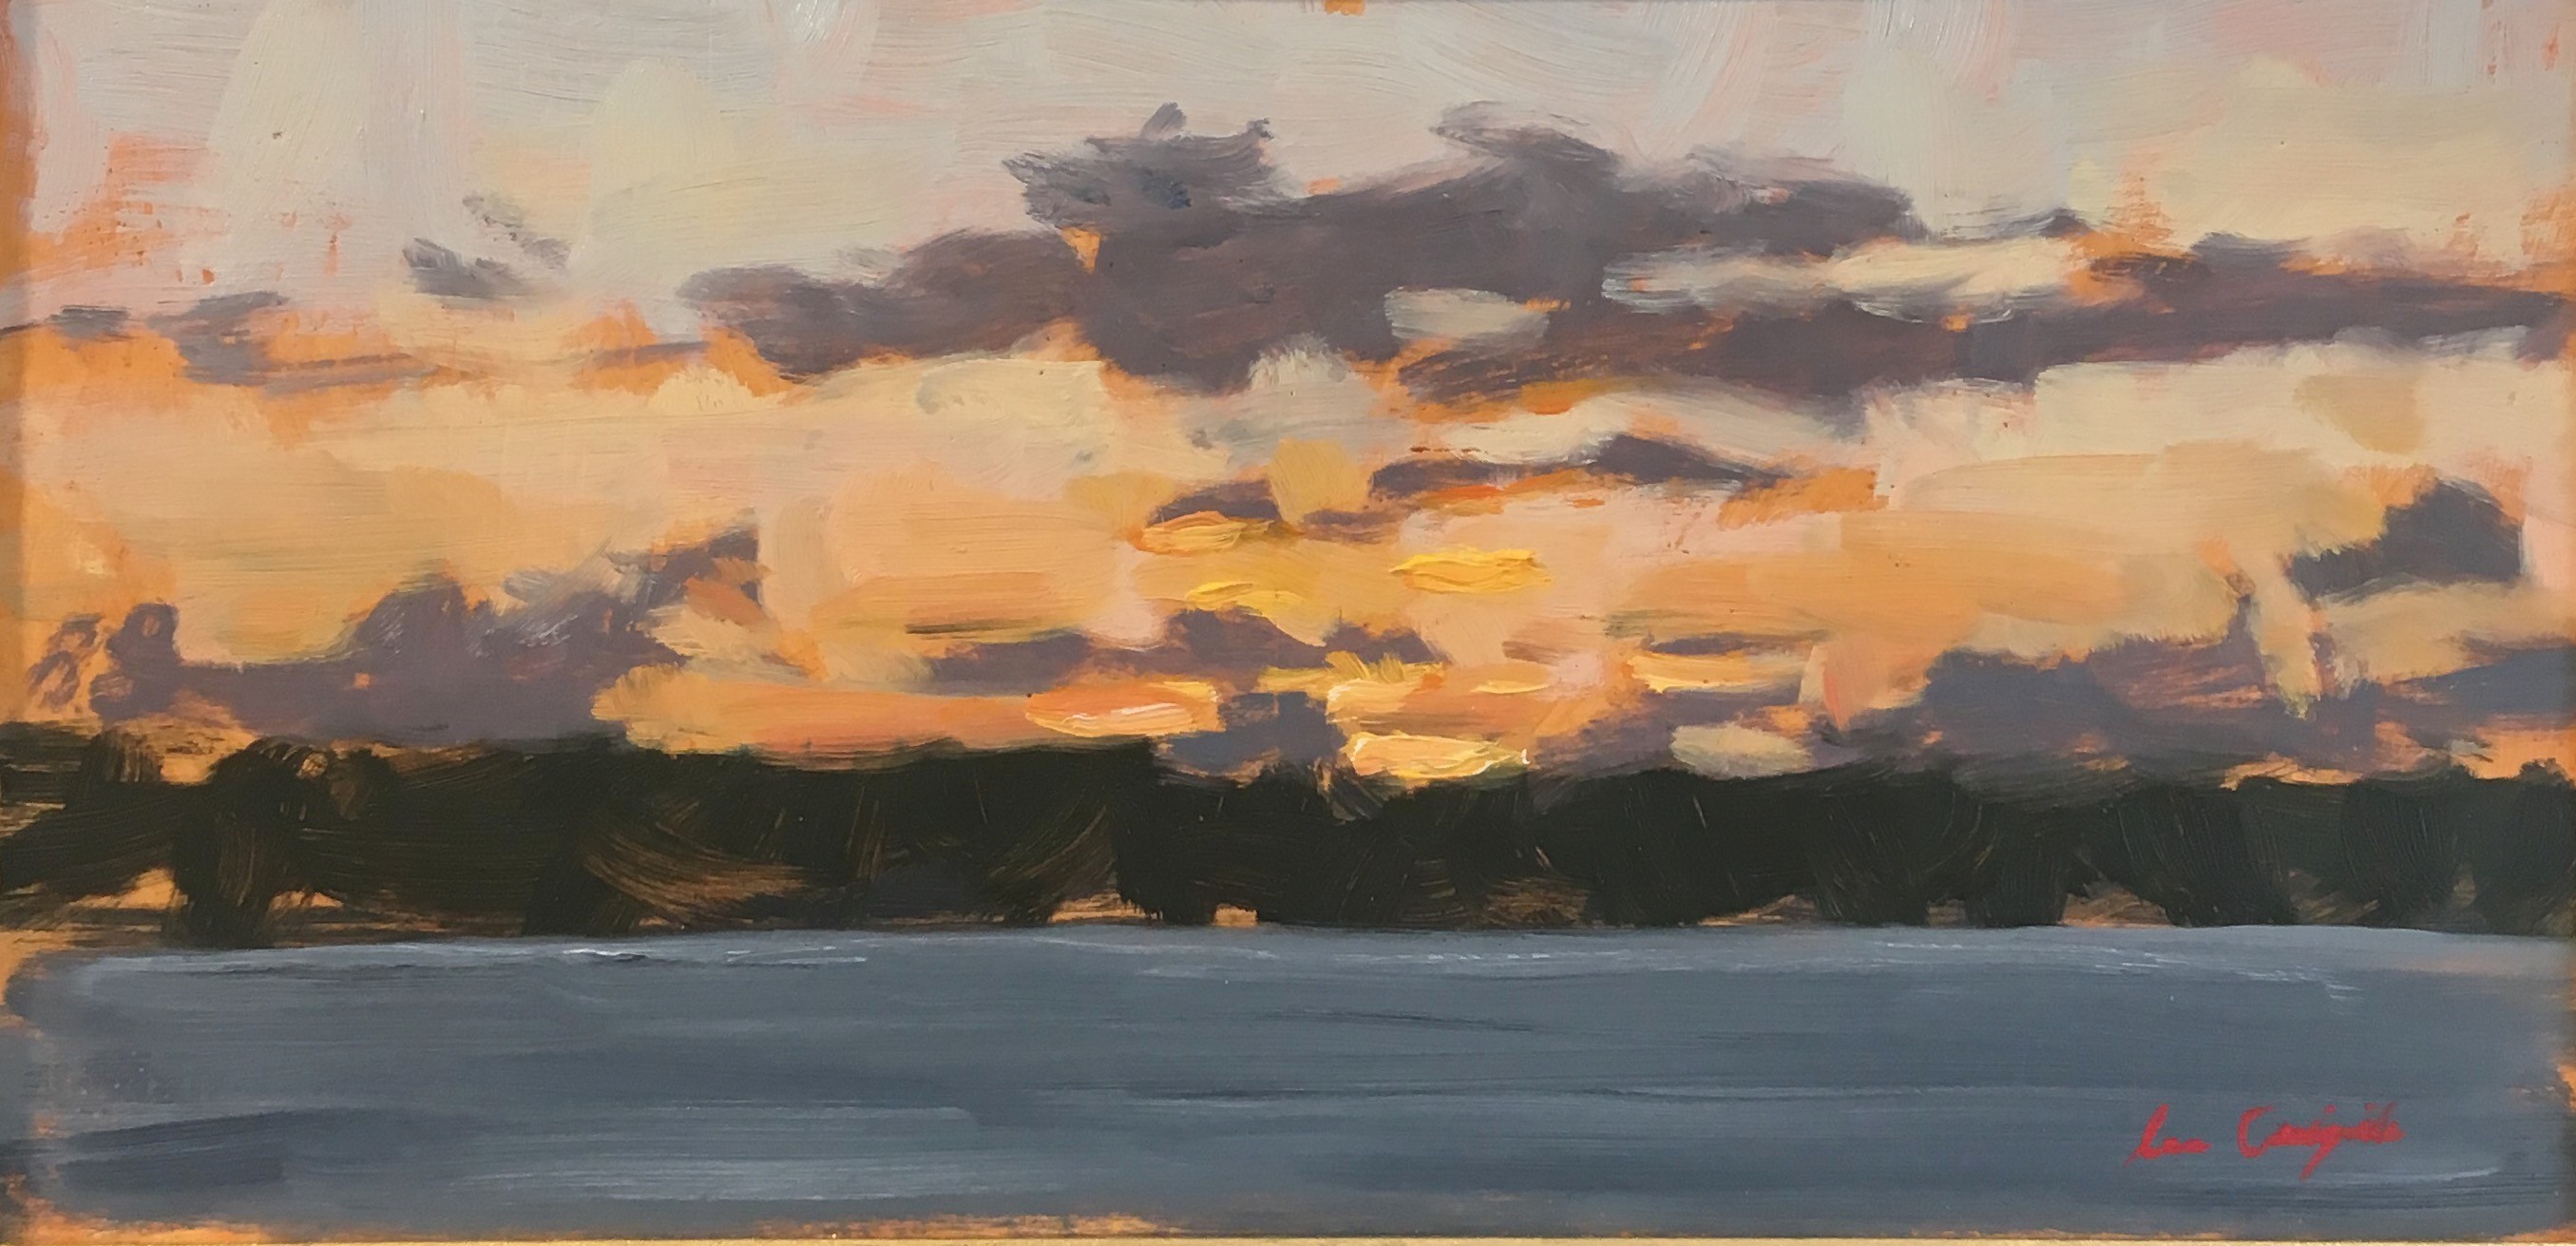 'West Coast Sunset II' by artist Lee Craigmile